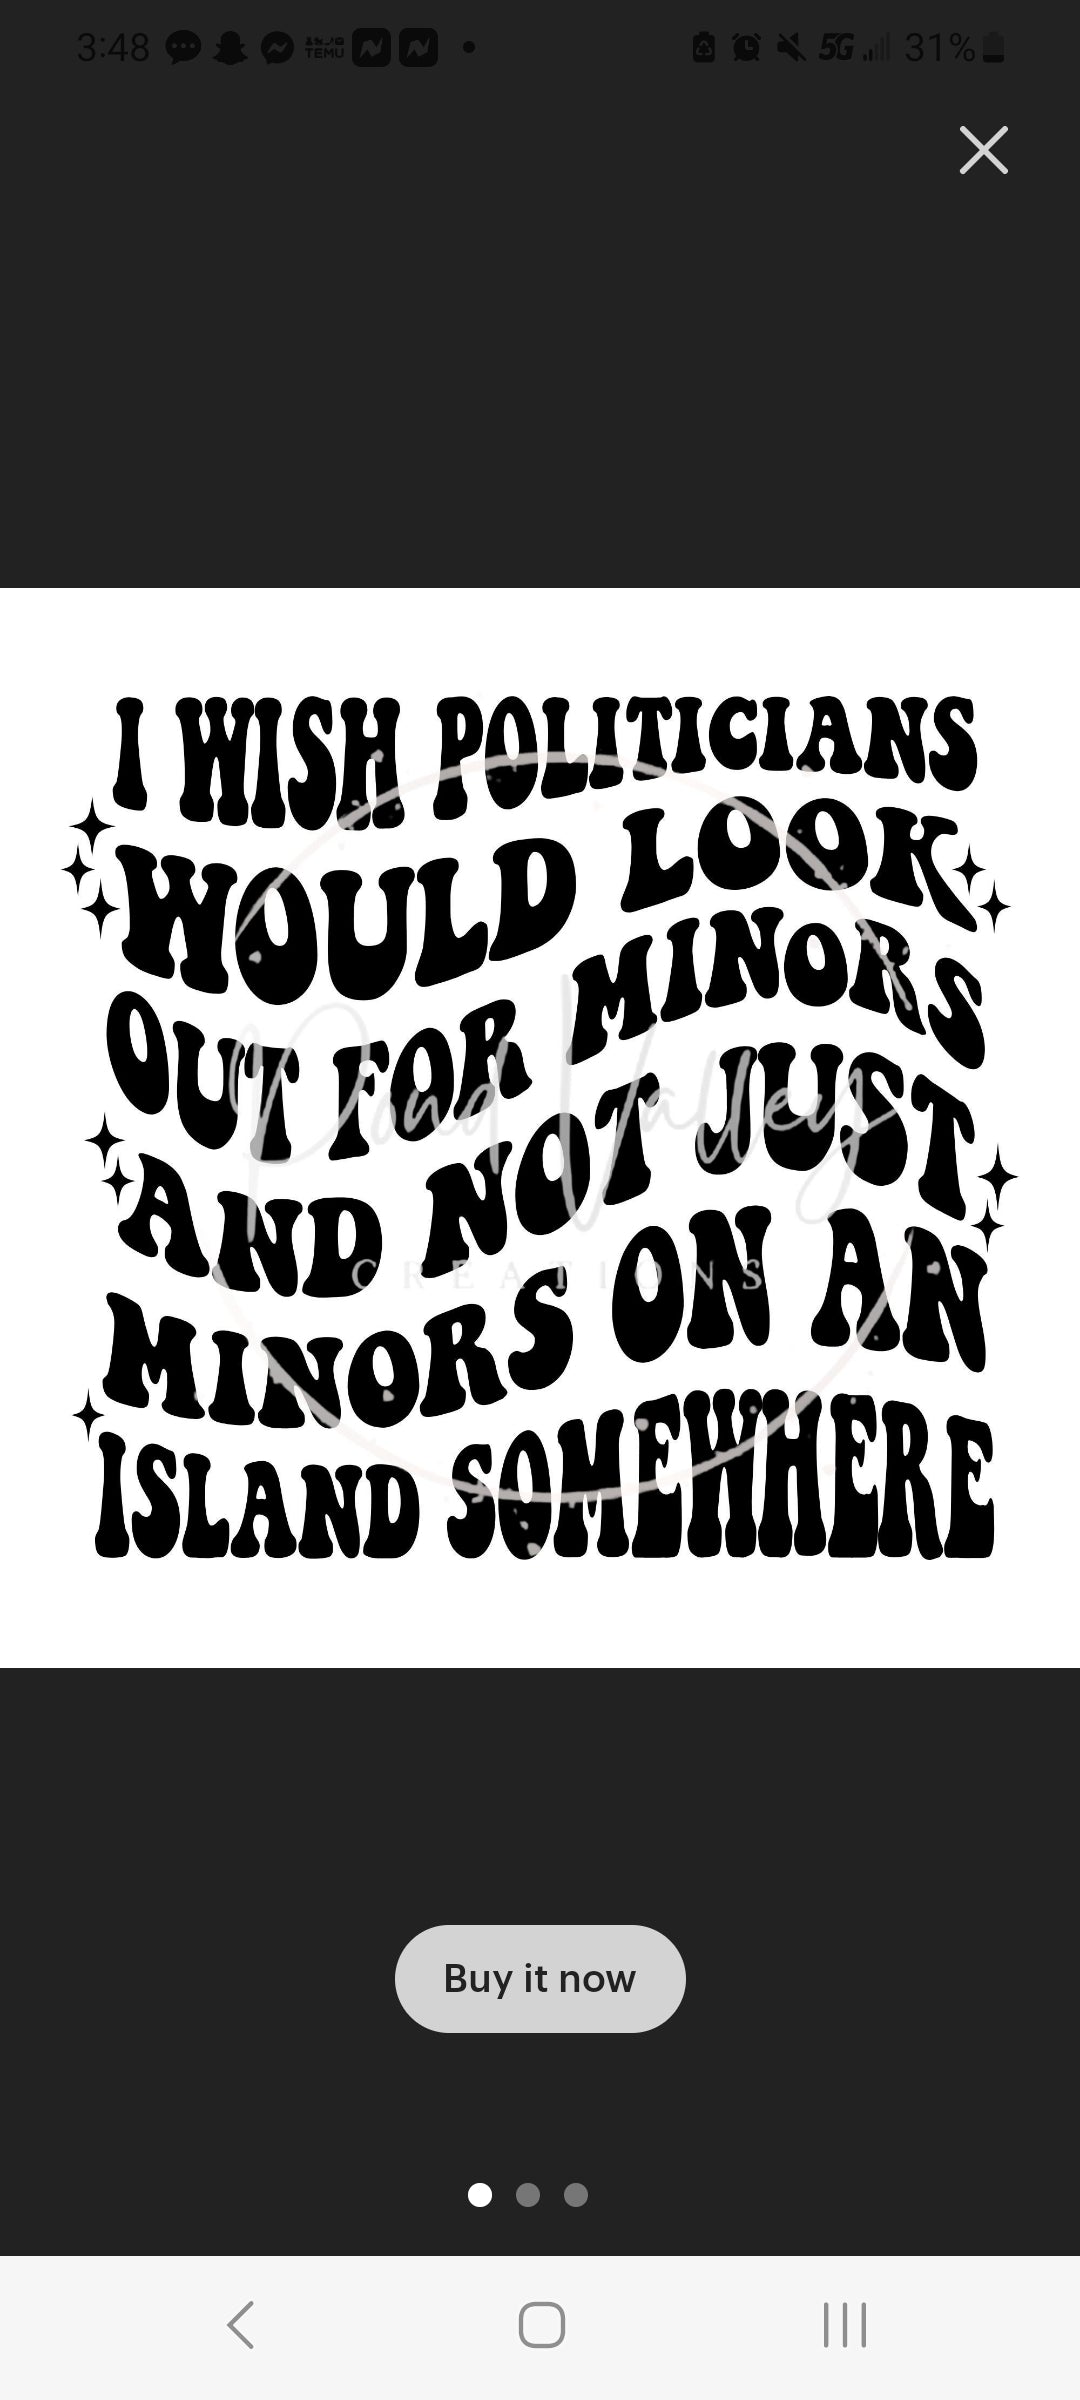 I wish politicians